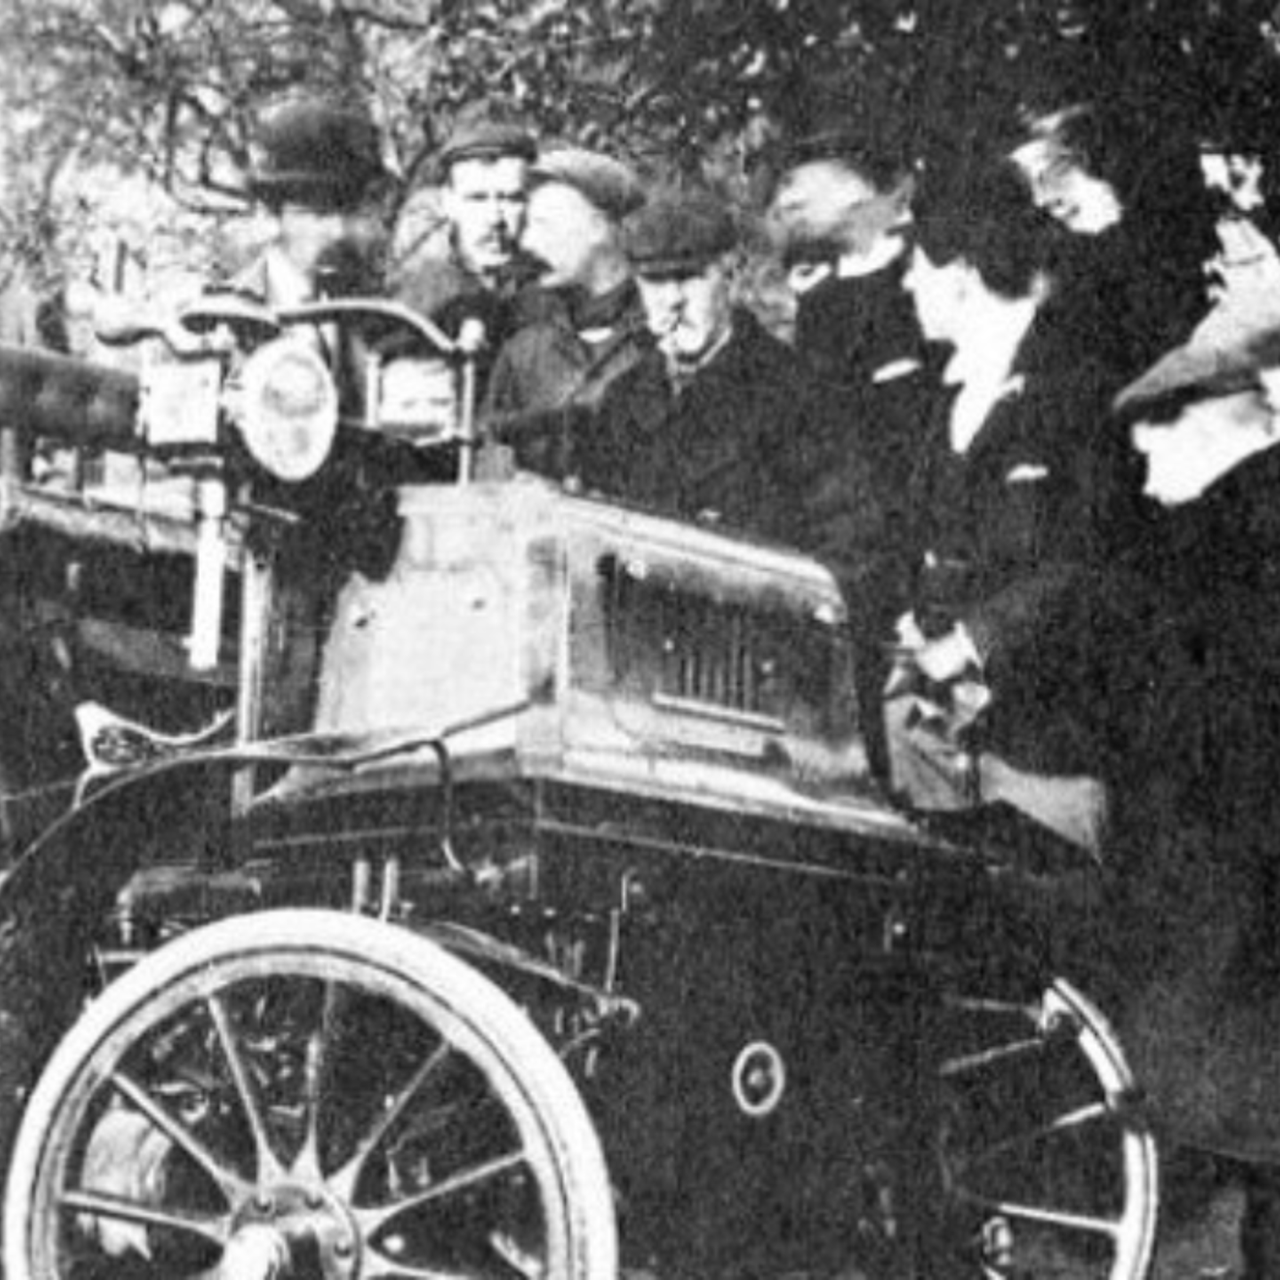 Schaulustige stehen an einem verunglückten Motorwagen (Archivbild)